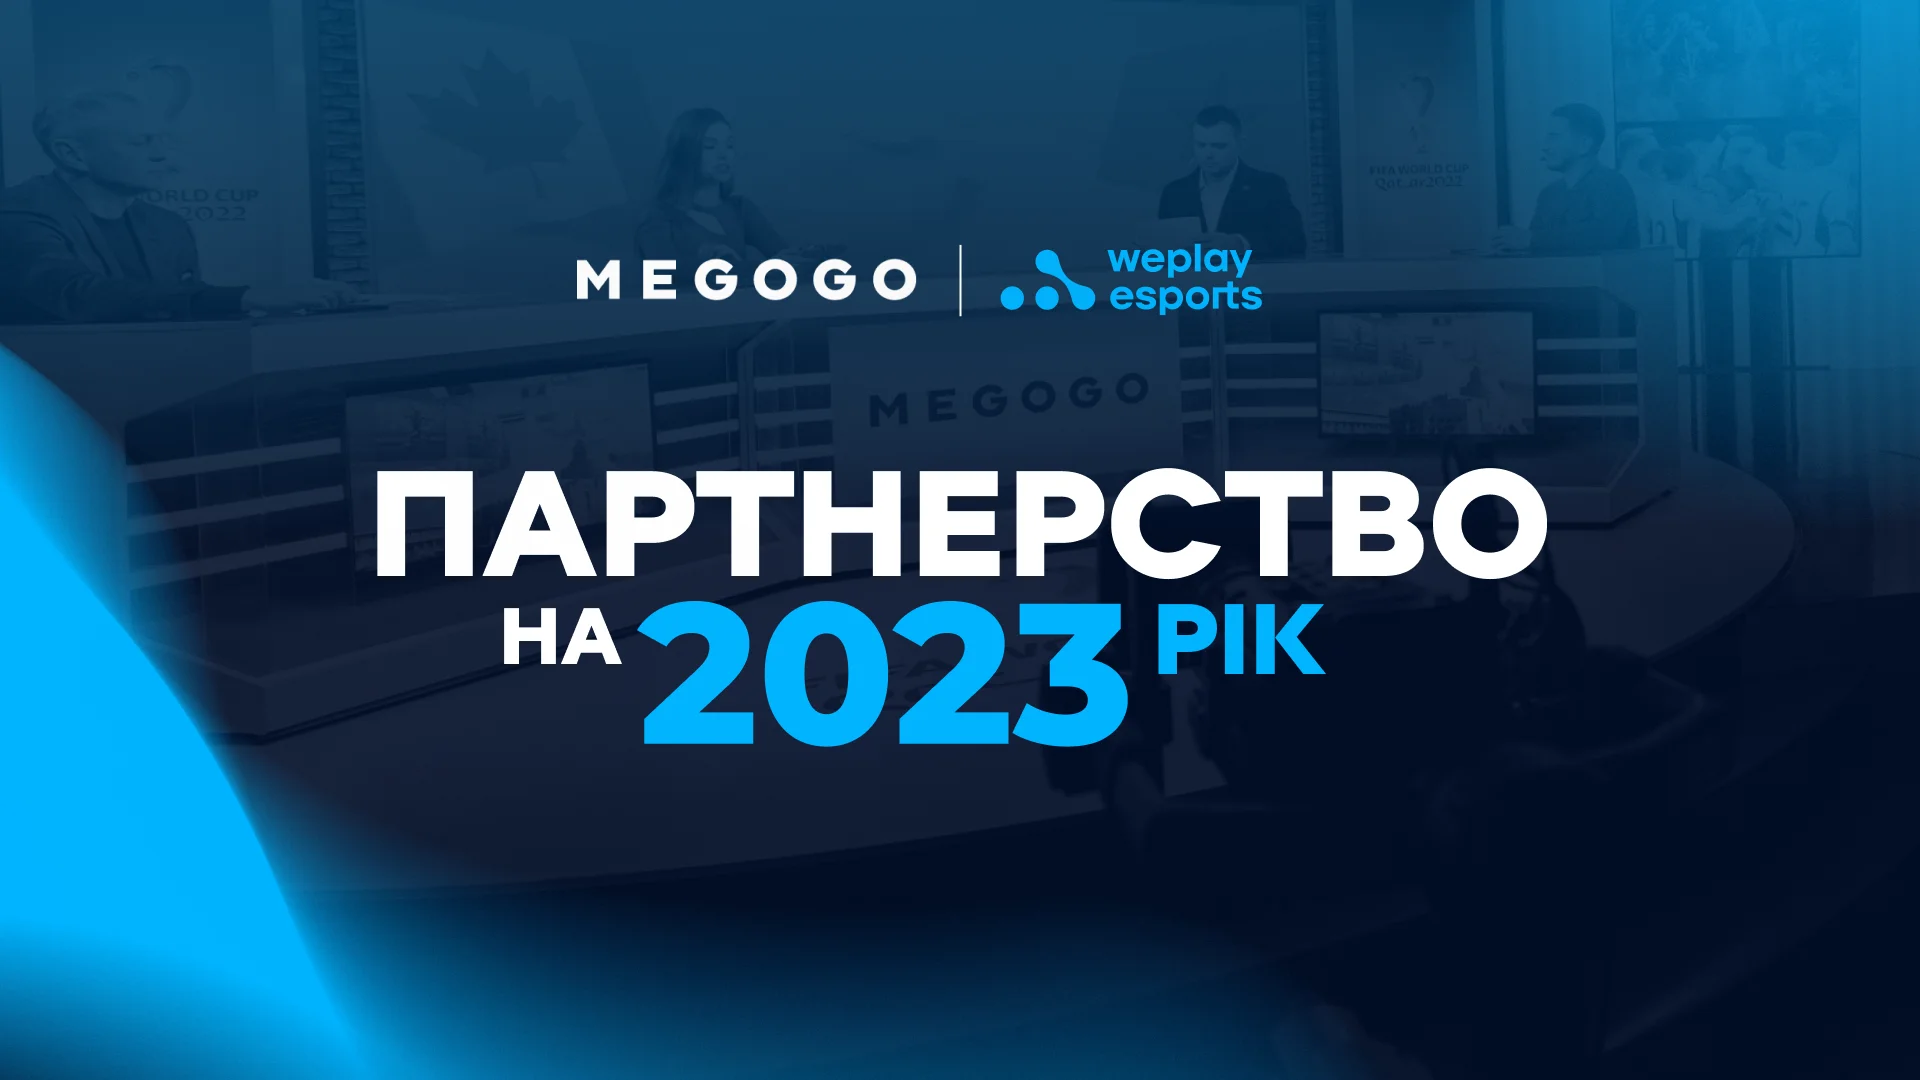 WePlay Esports та MEGOGO: партнерство для створення якісних спортивних трансляцій українською мовою. Зображення: WePlay Holding